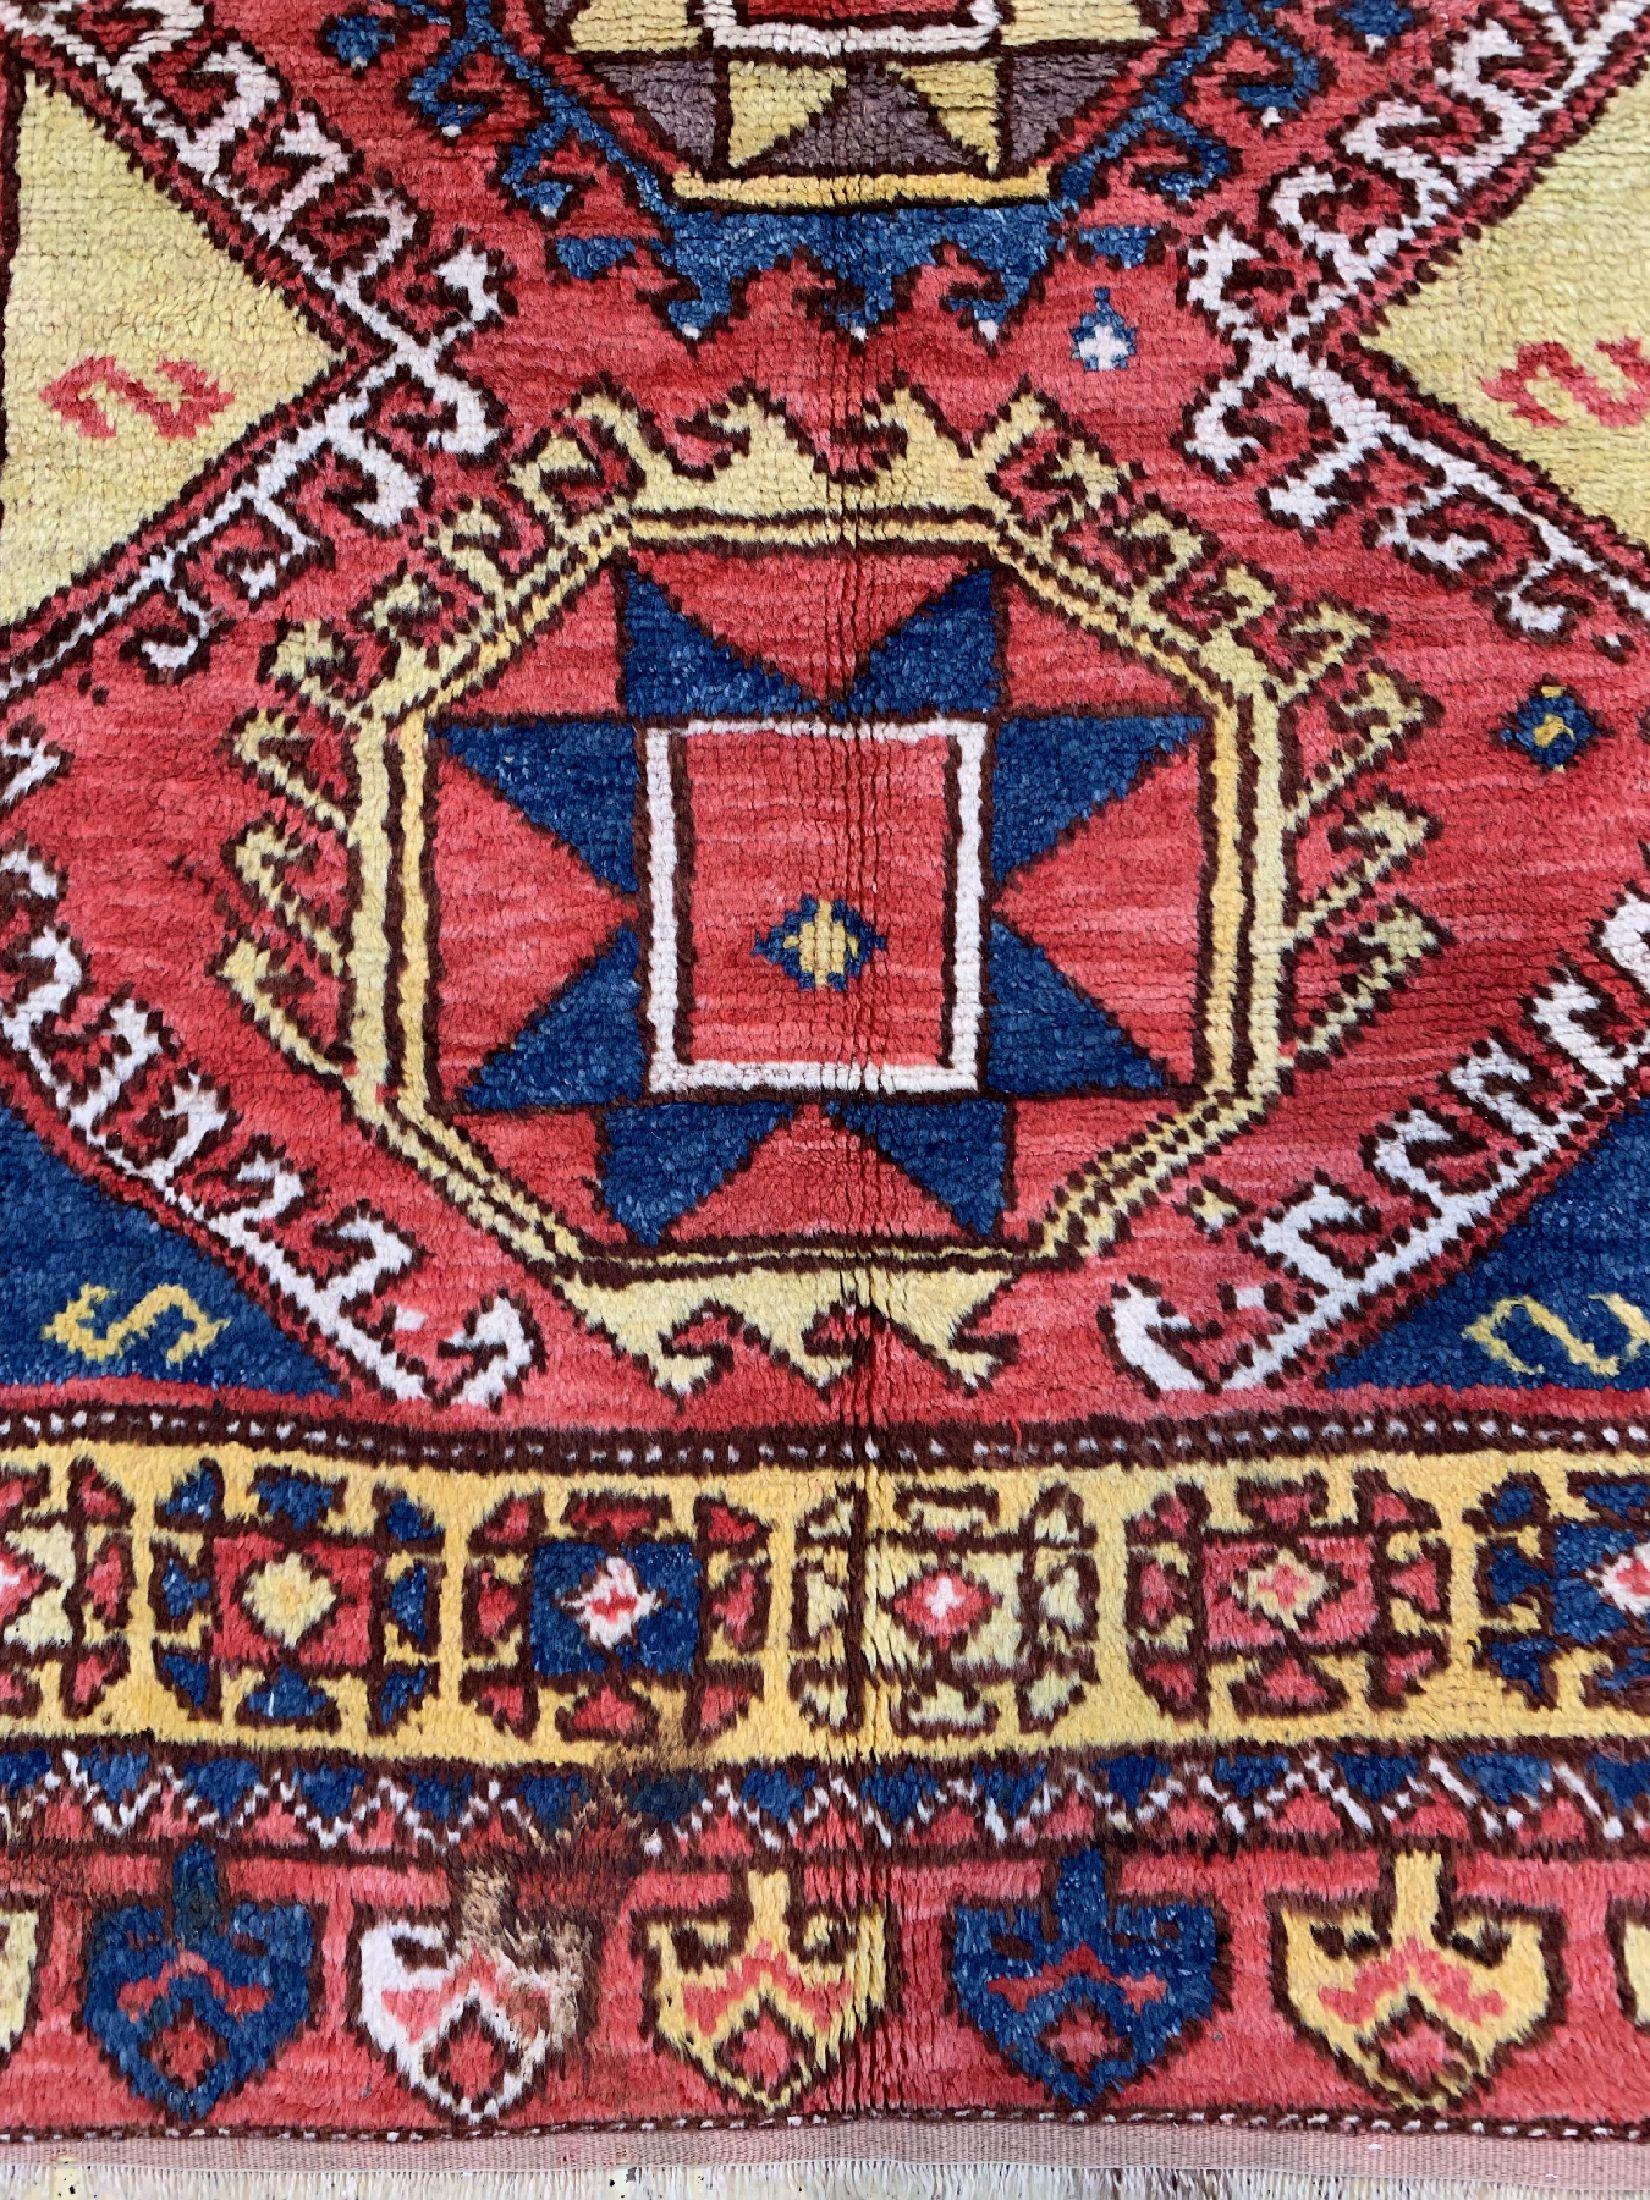 Dies ist ein prächtiger Teppich aus Konya in Zentralanatolien. Er weist alle Merkmale dieser Teppichregion auf, aus der die schönsten und besten Stücke Anatoliens stammen. Konya war lange Zeit das Zentrum der anatolischen Webereikunst und brachte